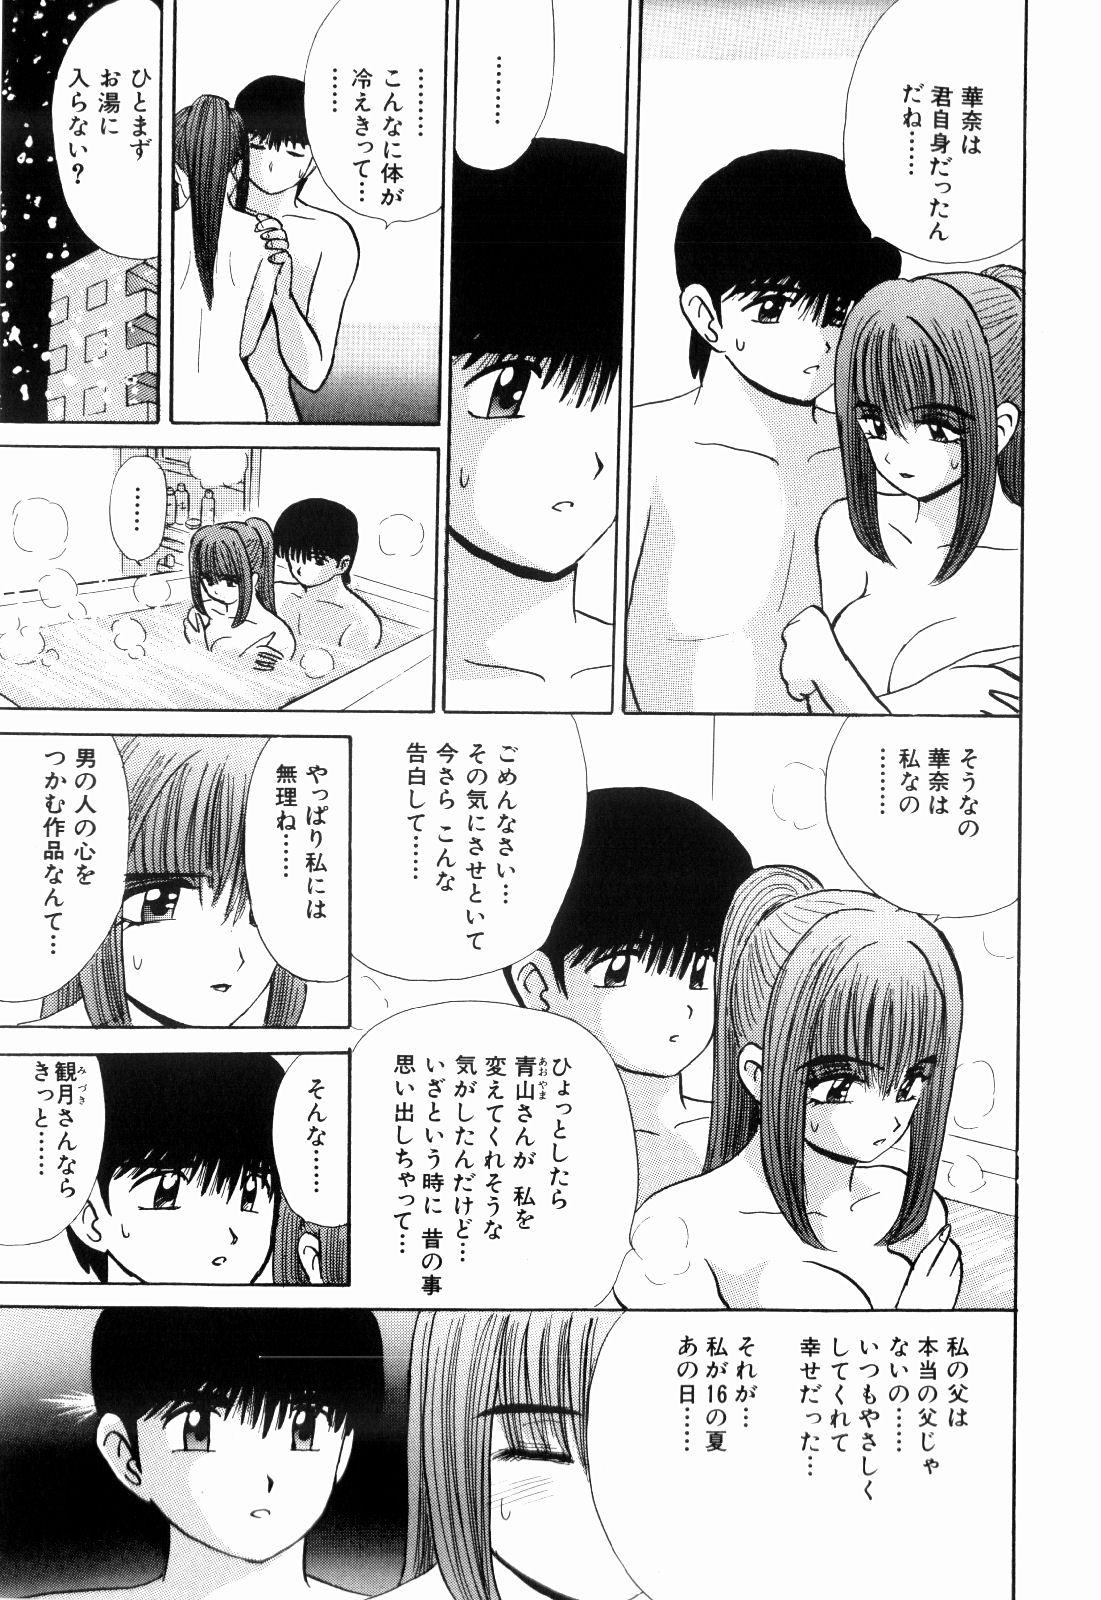 Anime Kenjiro Kakimoto - Futari Kurashi 13 Nasty Free Porn - Page 11